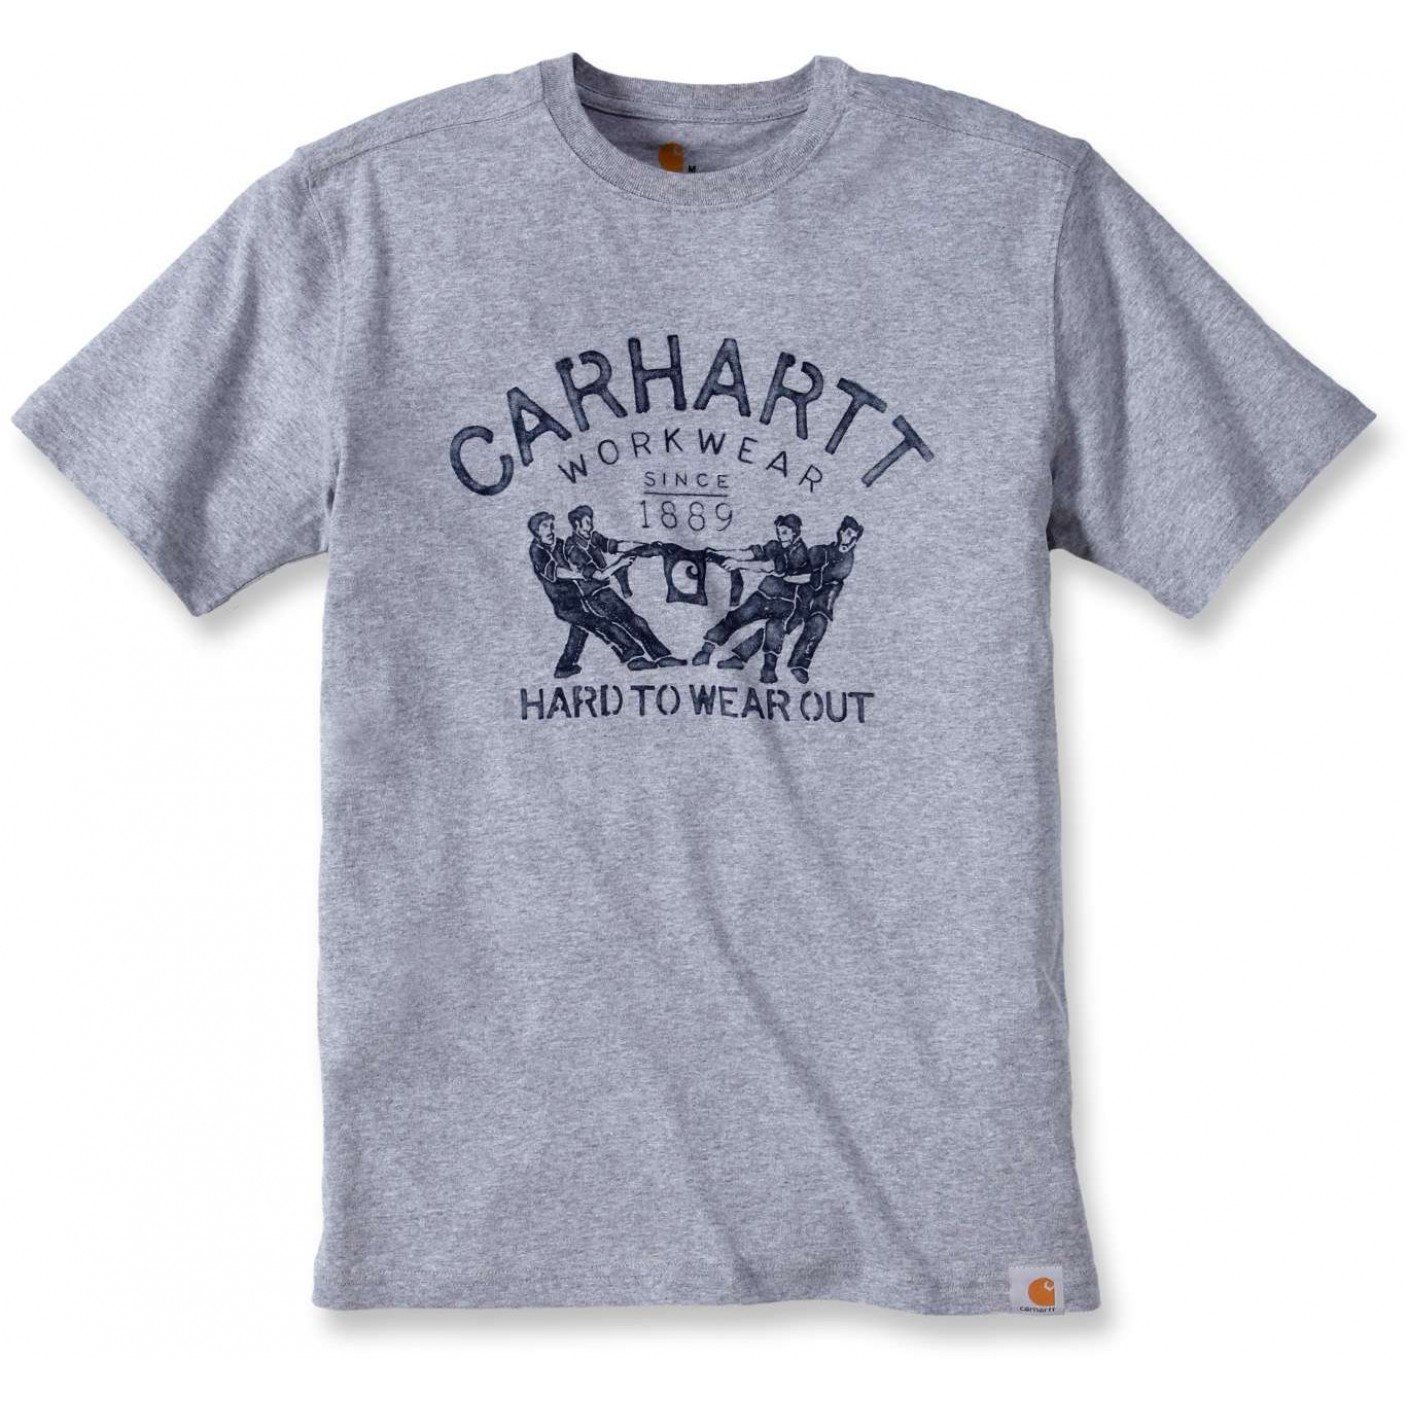 Wear me out. Футболка Carhartt Casual. Футболка Carhartt серая. Carhartt футболка белая. Необычные футболки Carhartt.